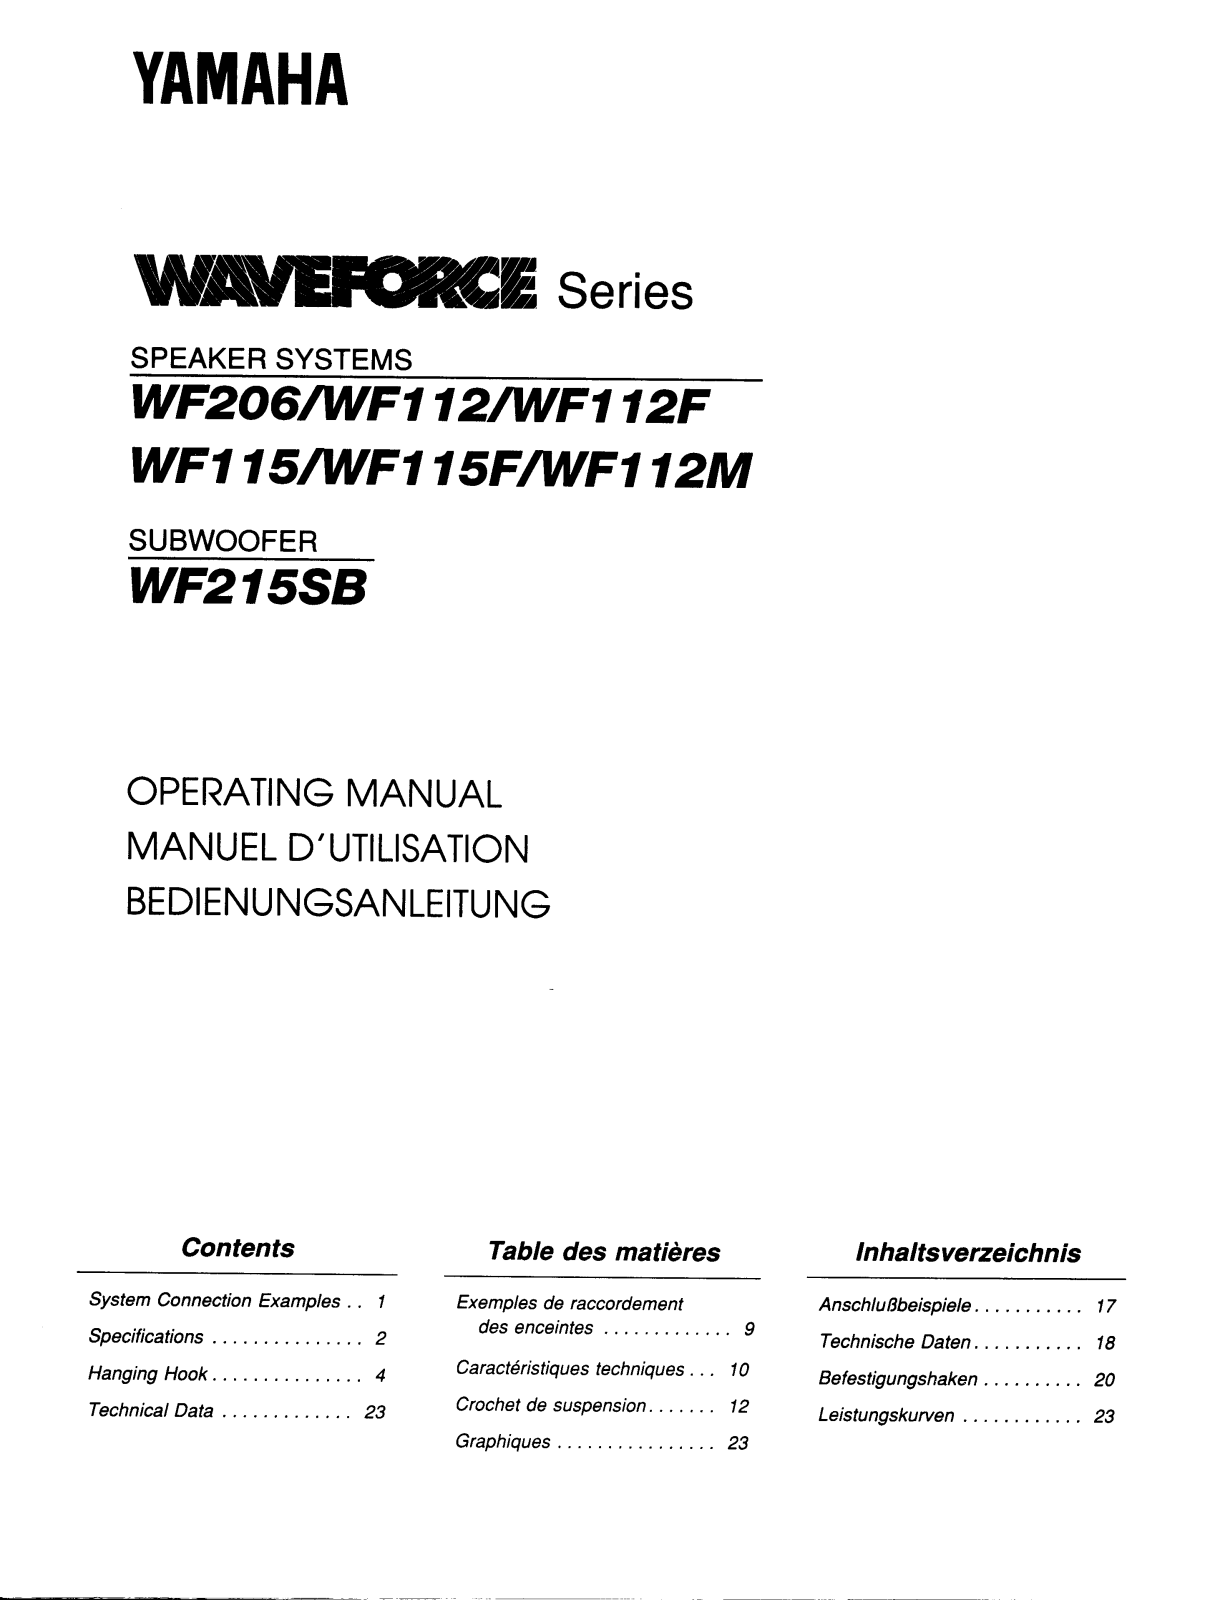 Yamaha WF-112, WF-112-F, WF-112-M, WF-115, WF-115-F Owners manual